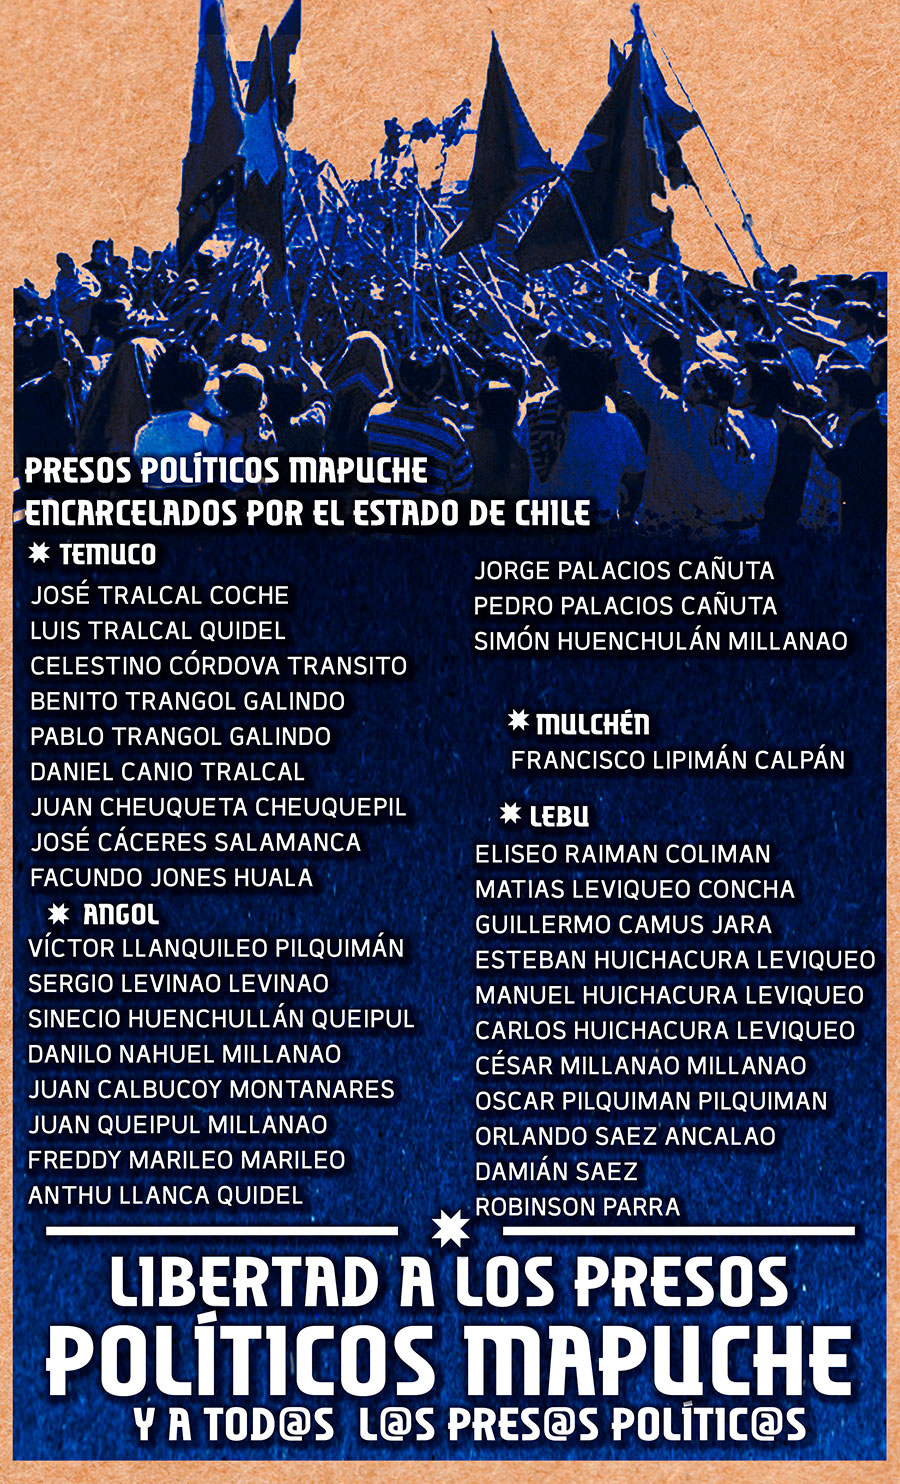 Registro de los presos políticos mapuche recluidos en diferentes cárceles de Chile hasta junio de 2020